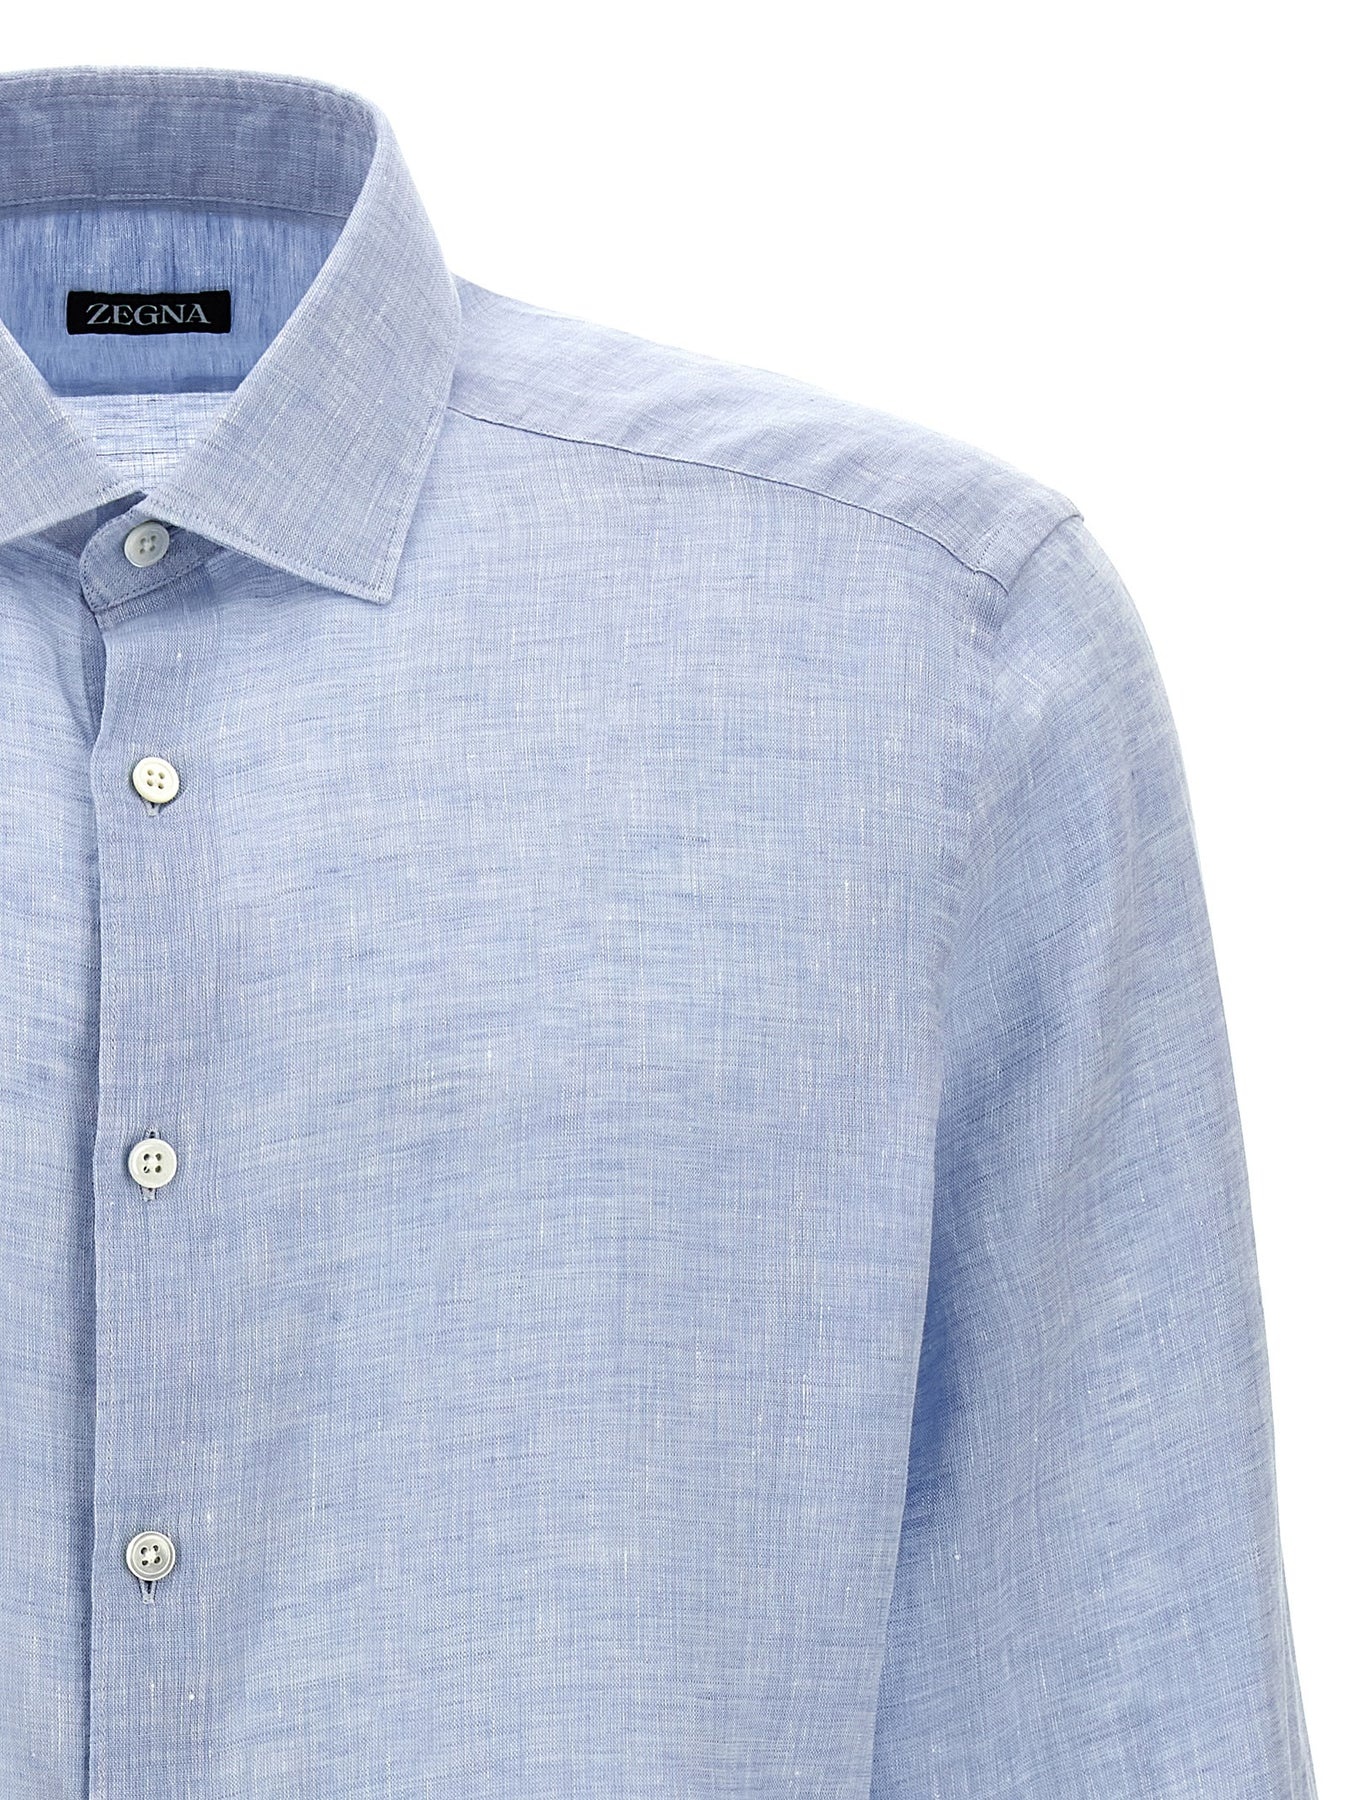 Linen Shirt Shirt, Blouse Light Blue - 3